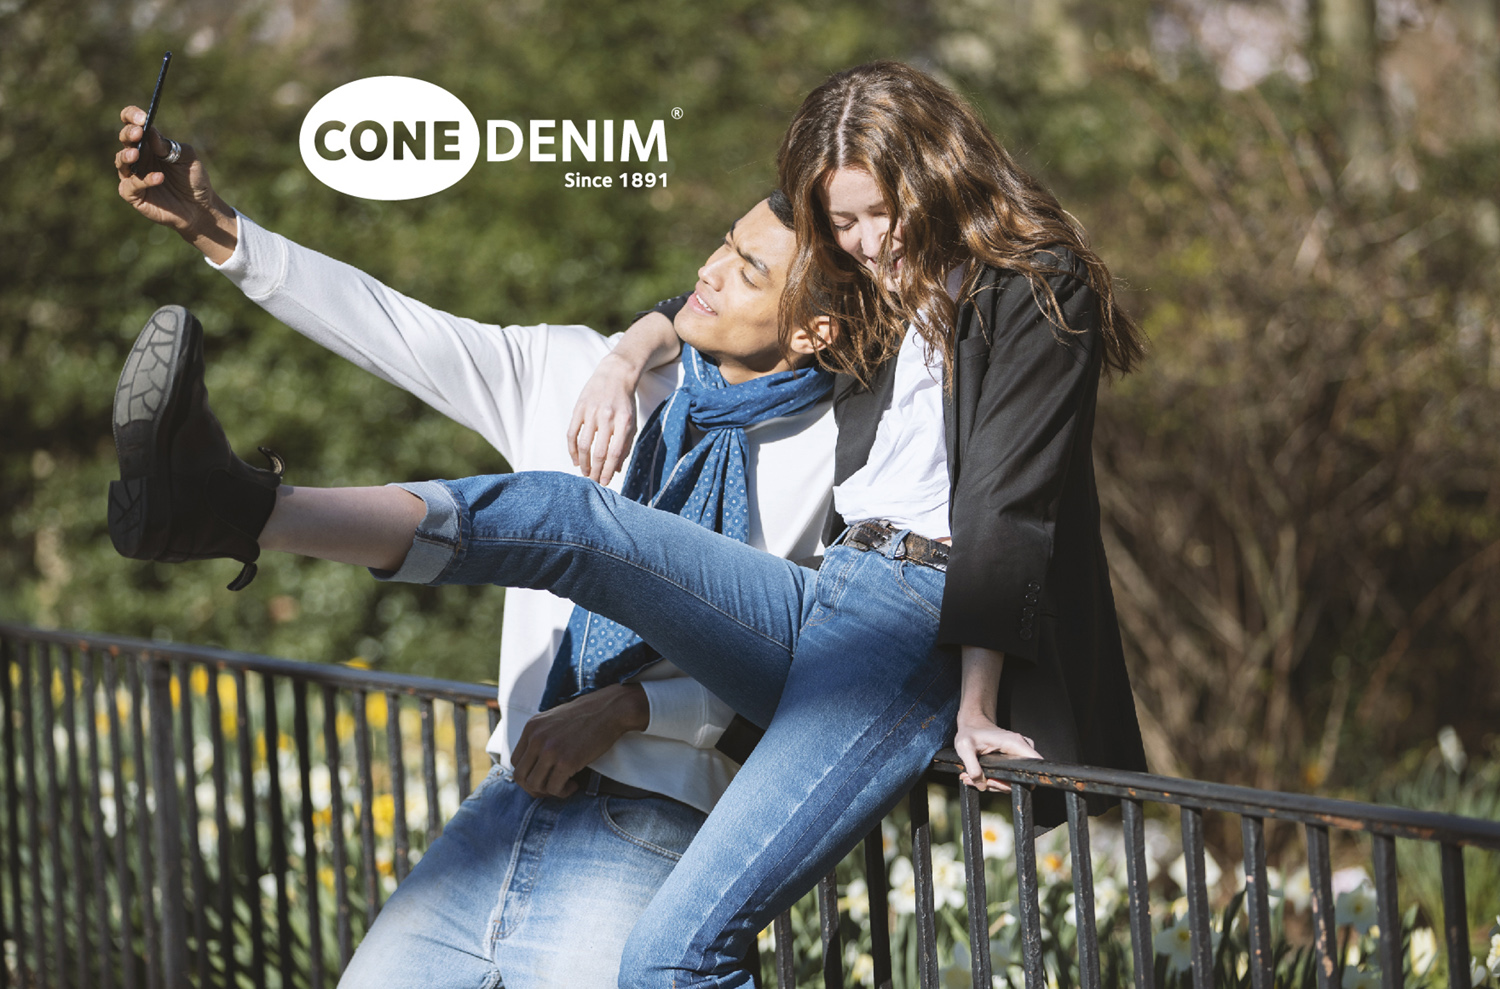 Cone Denim Launches New Website - Elevate Textiles